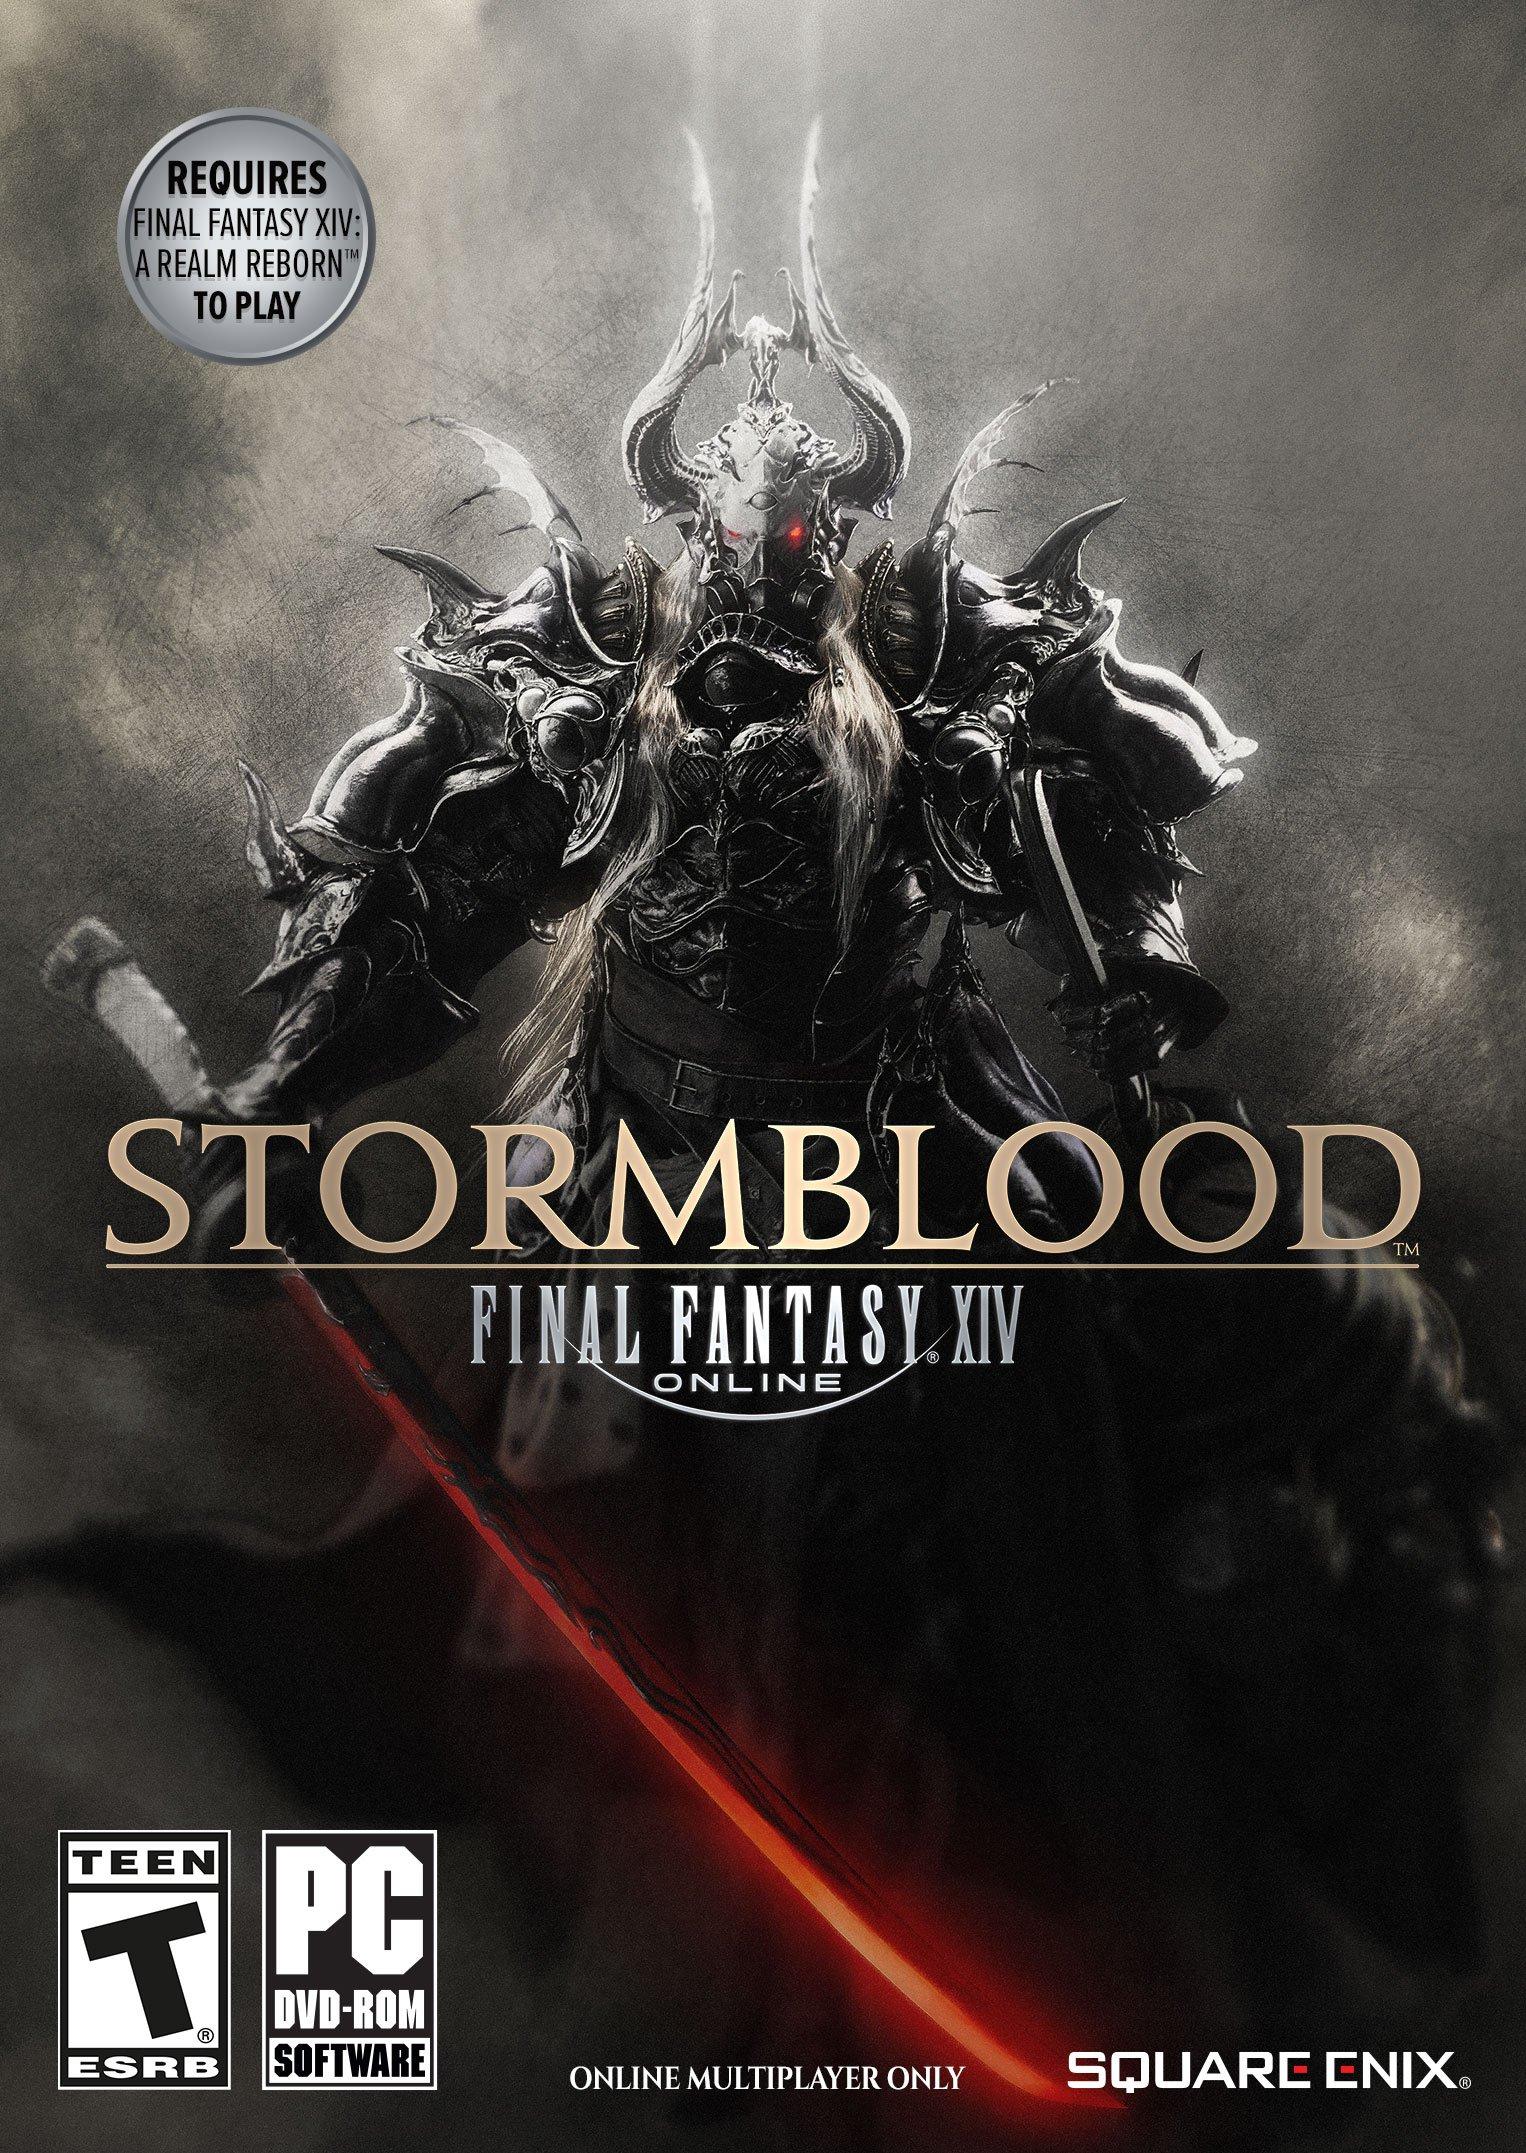 Final Fantasy XIV: Stormblood DLC - PC, Digital